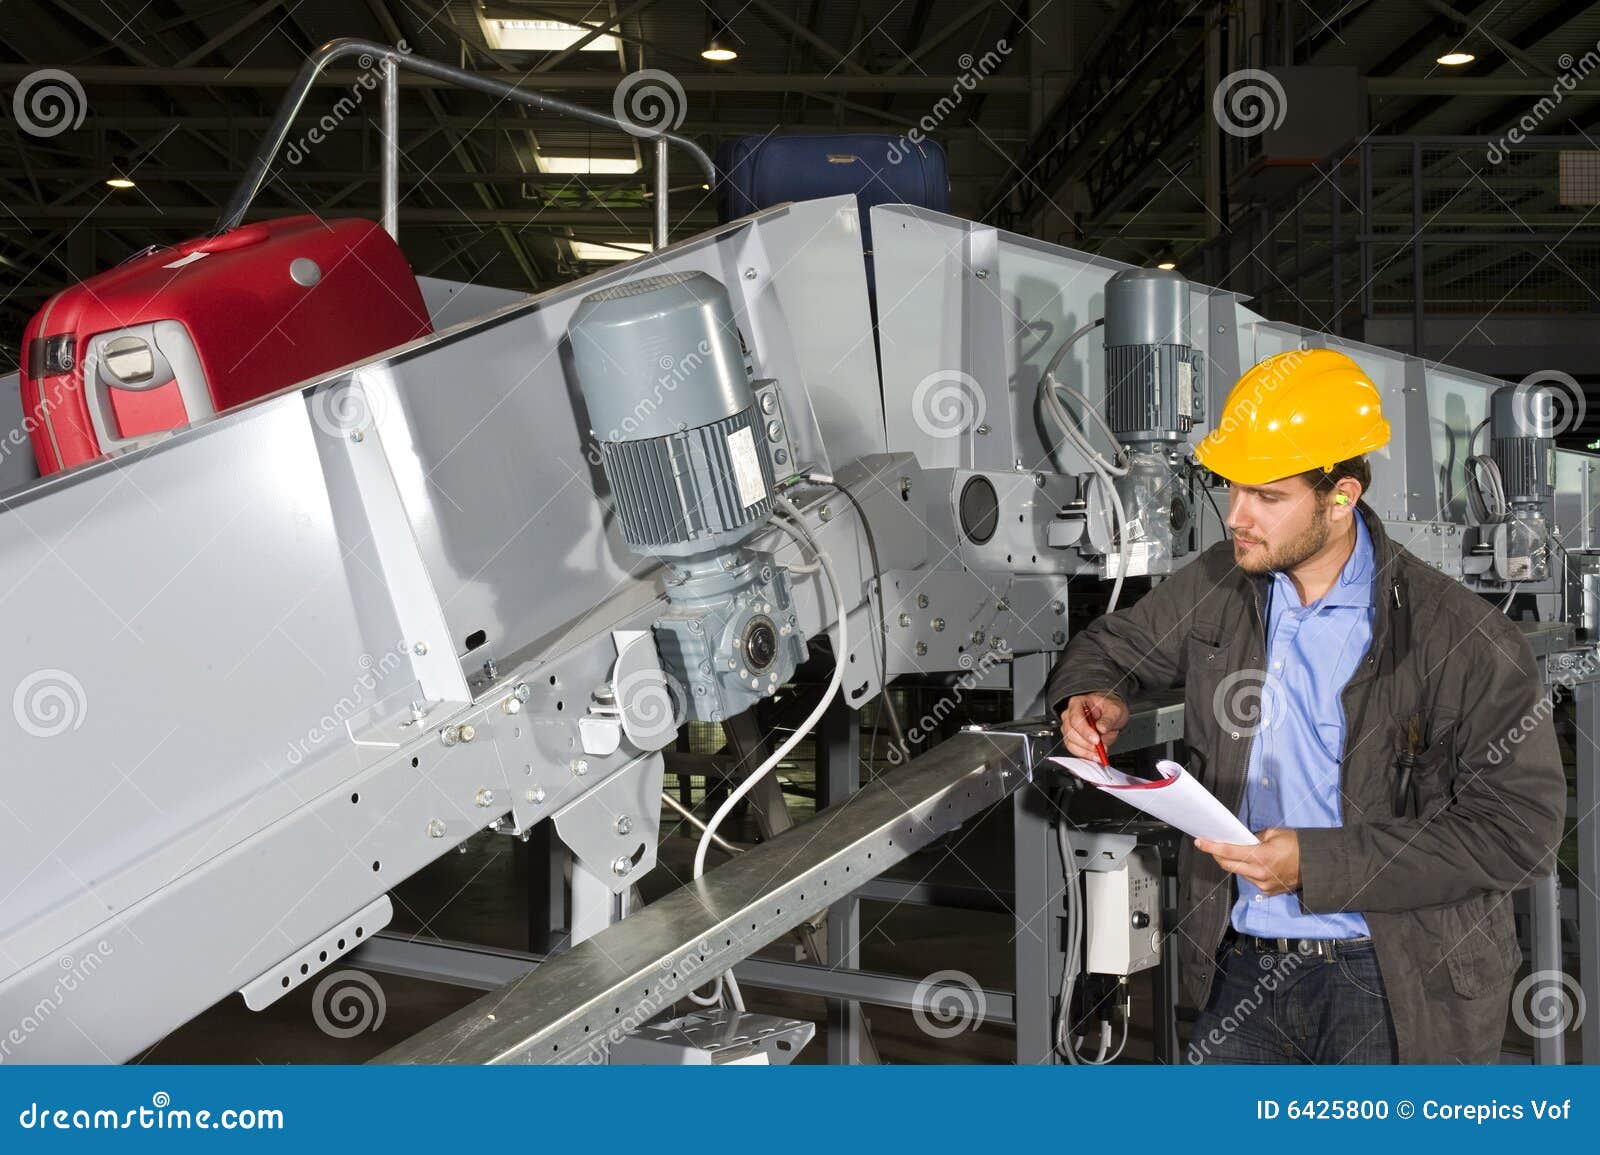 Material handling engineer jobs